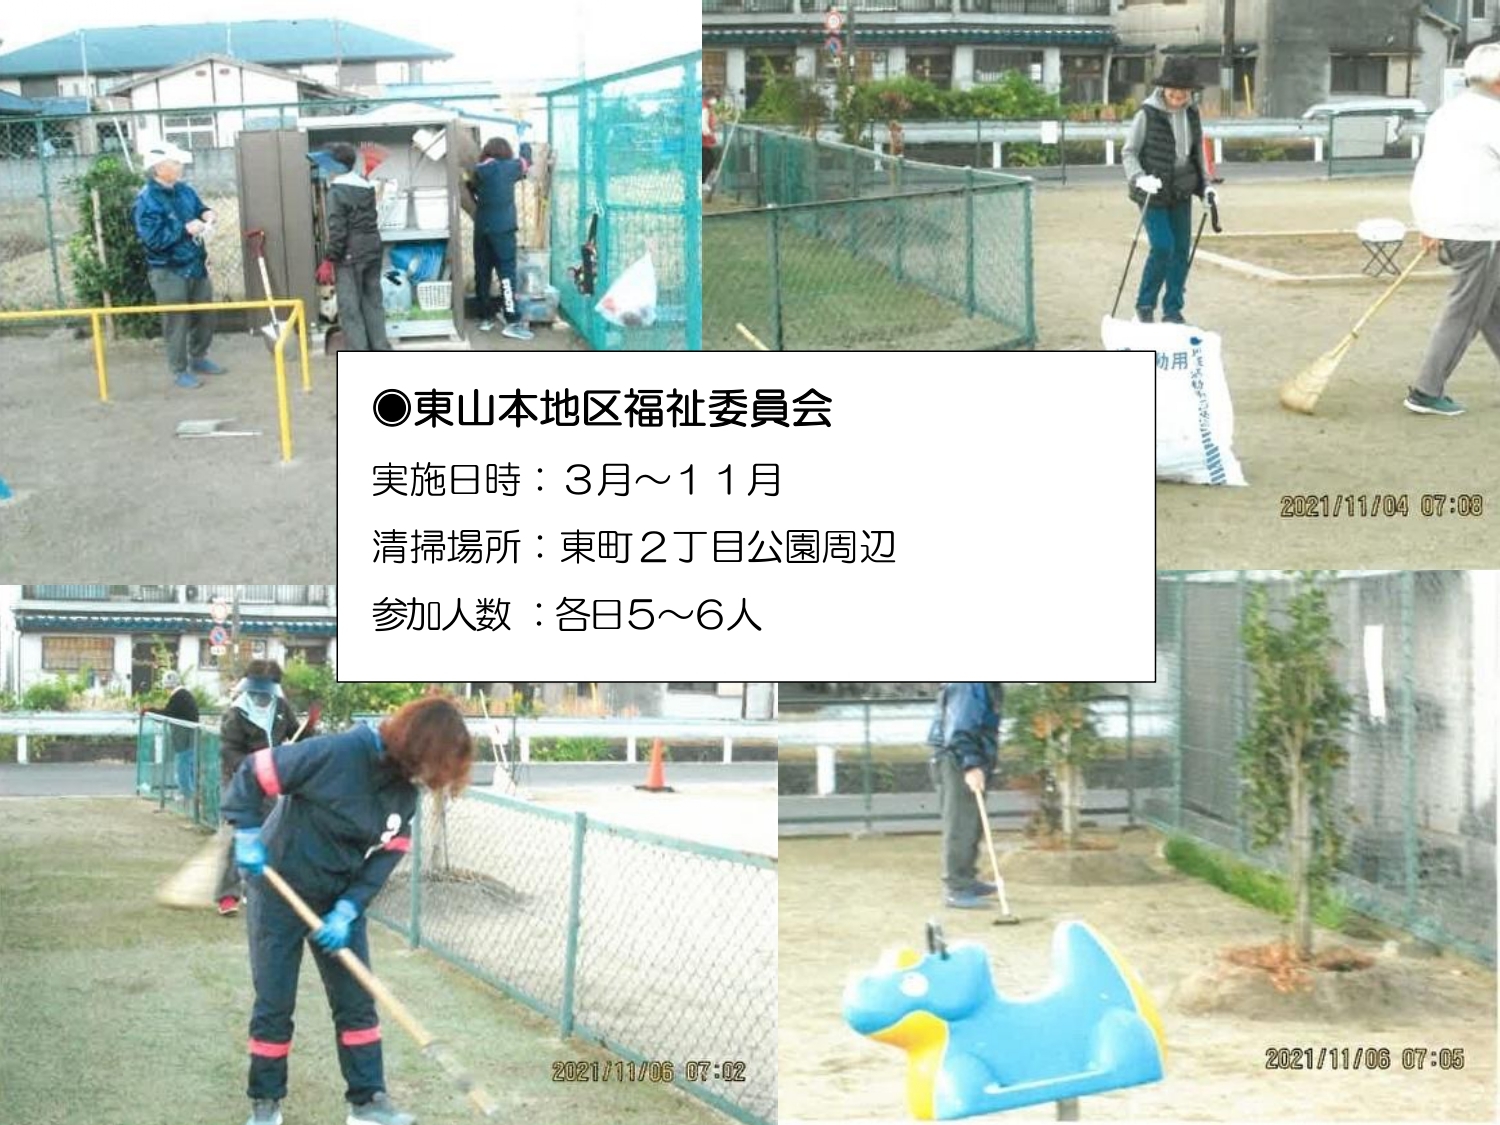 東山本地区福祉委員会の清掃画像です。